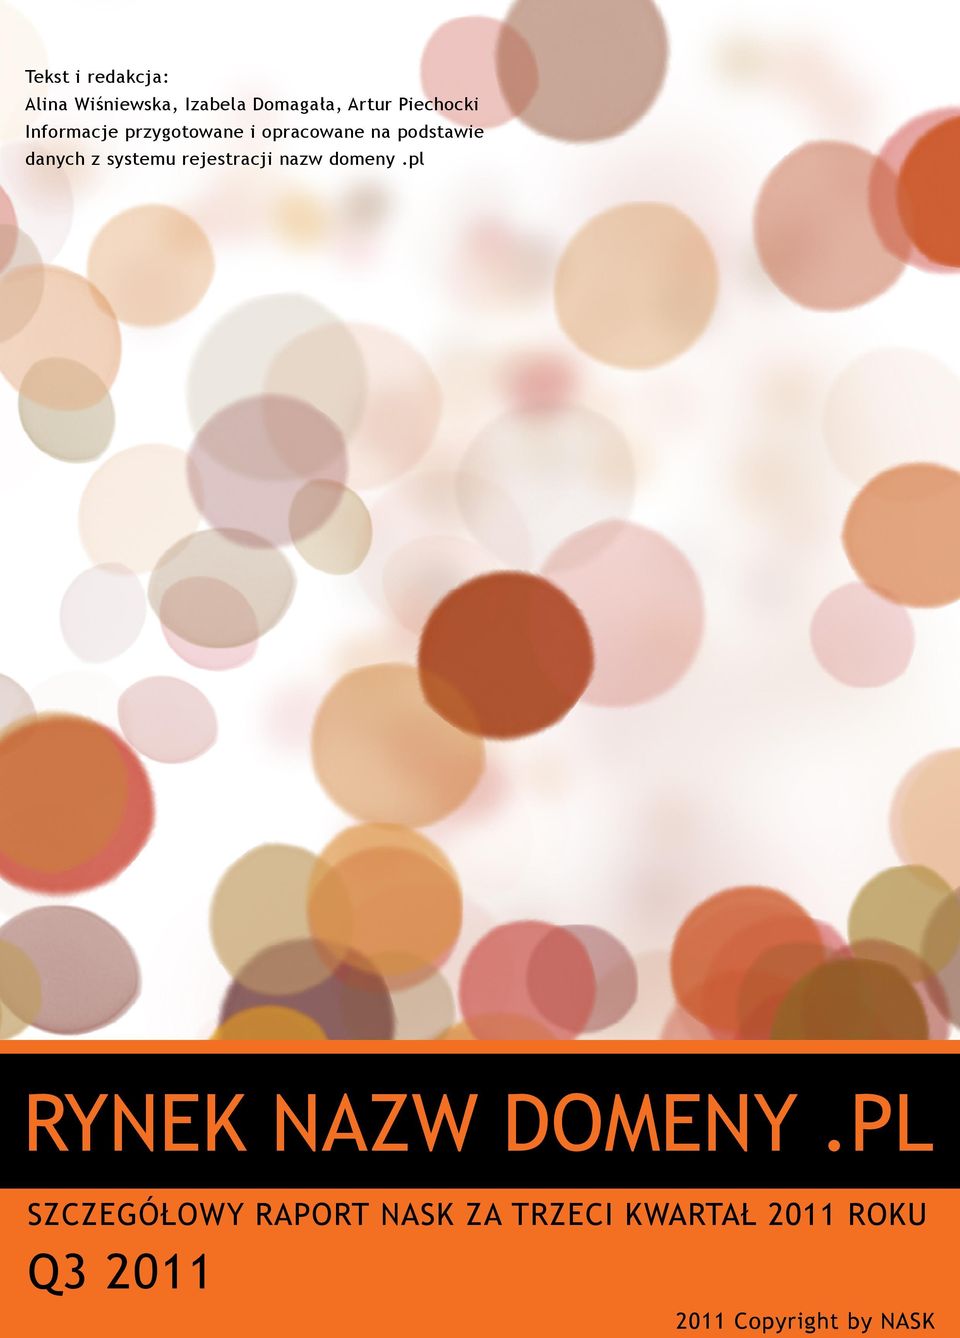 danych z systemu rejestracji nazw domeny.pl RYNEK NAZW DOMENY.